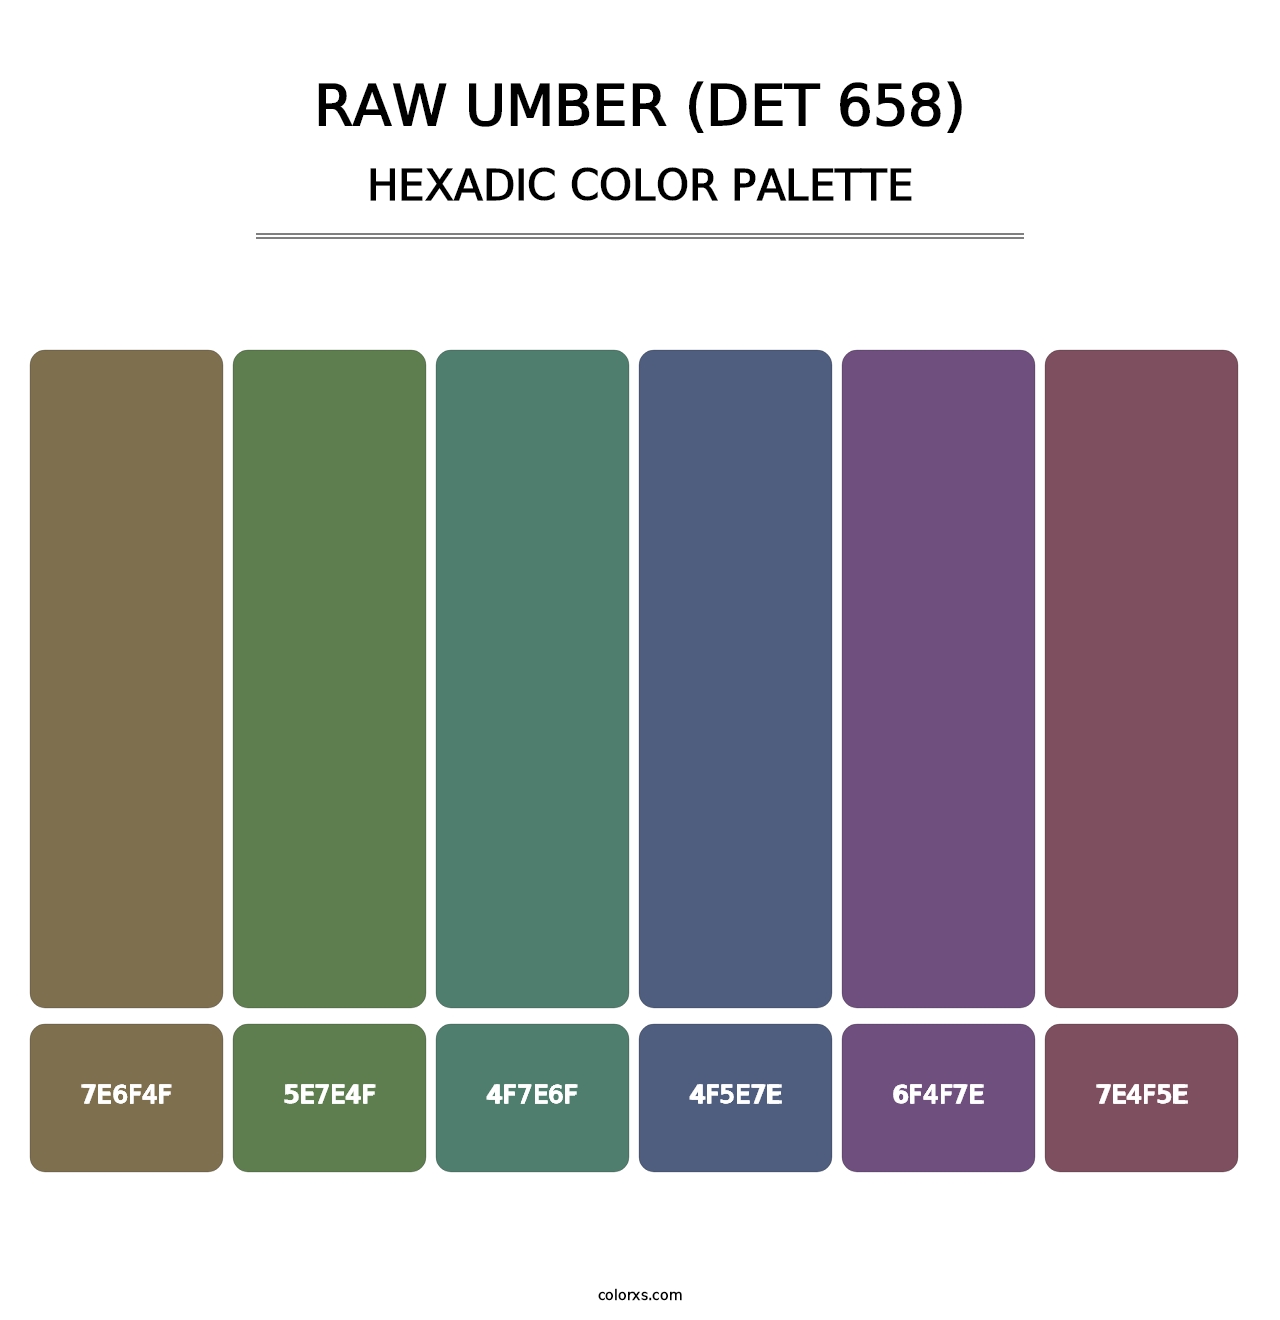 Raw Umber (DET 658) - Hexadic Color Palette